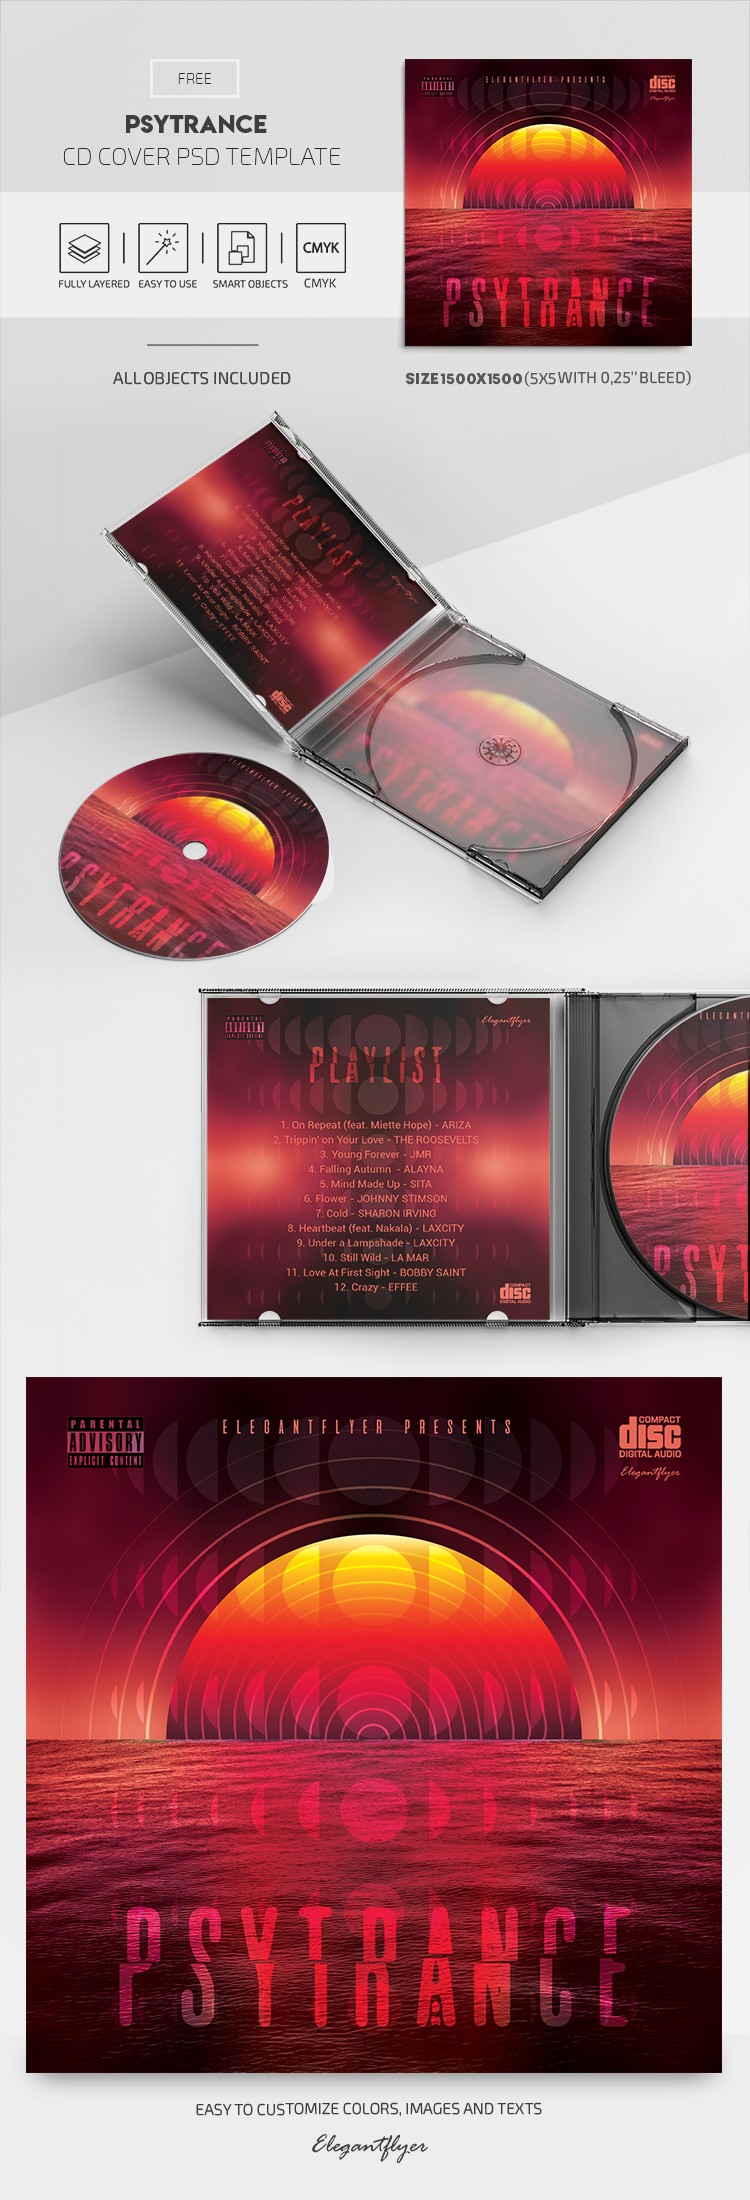 Couverture de CD de Psytrance by ElegantFlyer